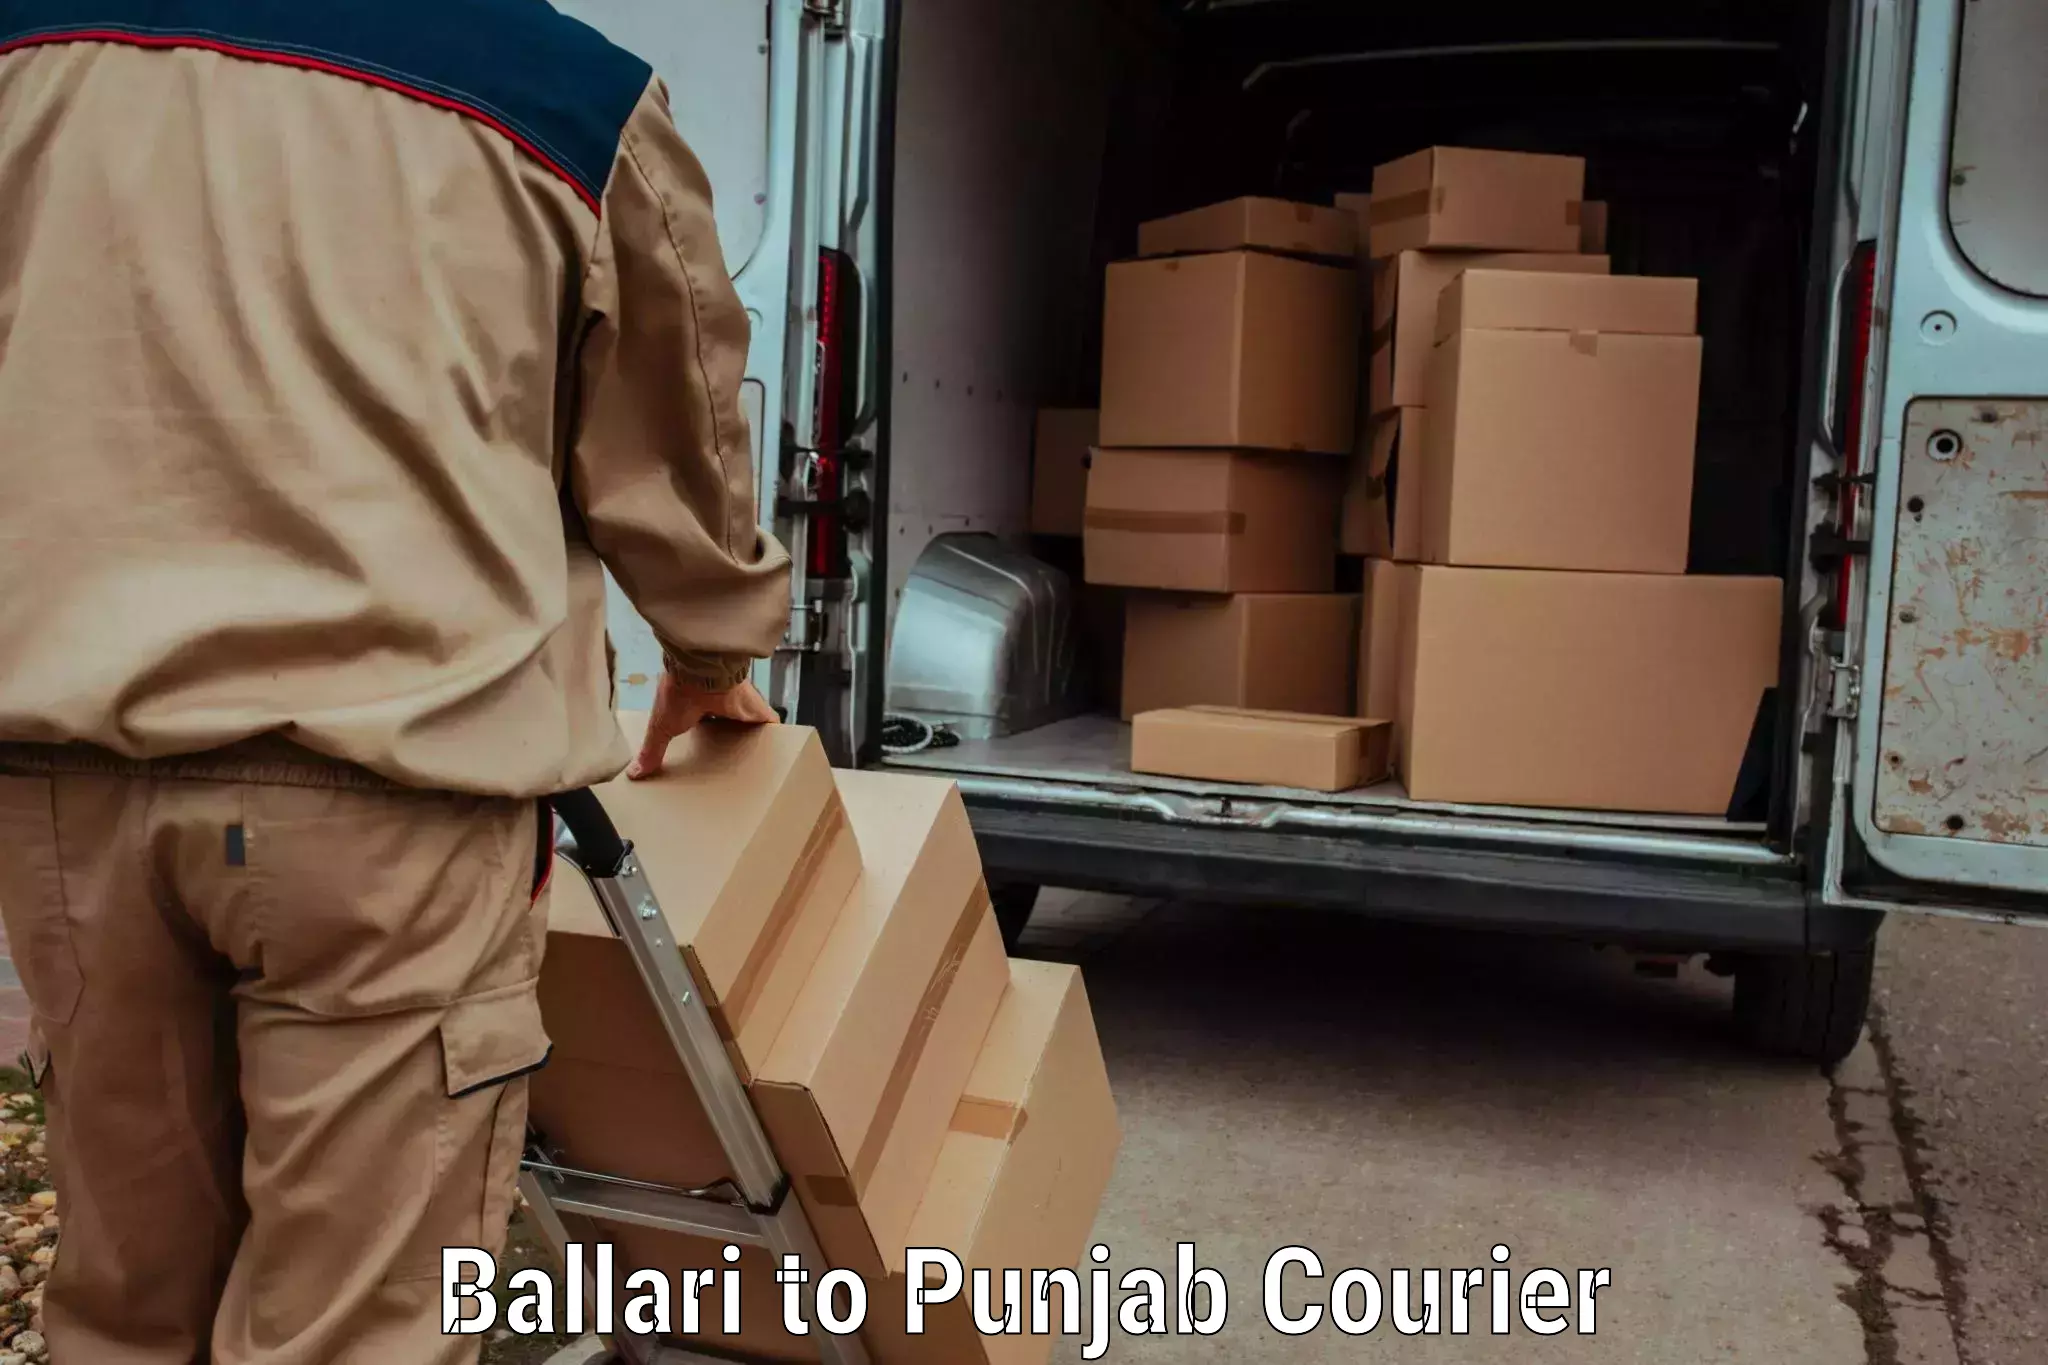 Multi-national courier services Ballari to Dera Bassi